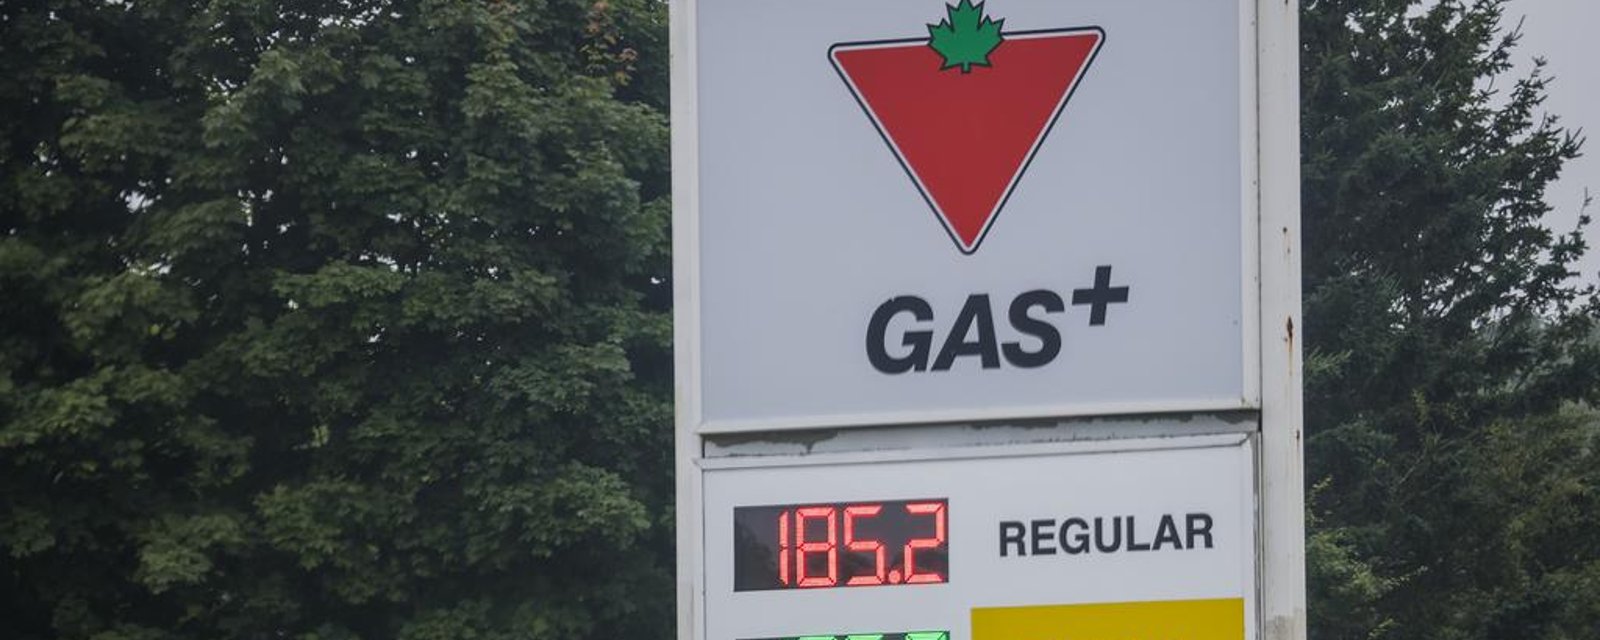 Un important facteur fera grimper le prix de l'essence dans les prochaines semaines